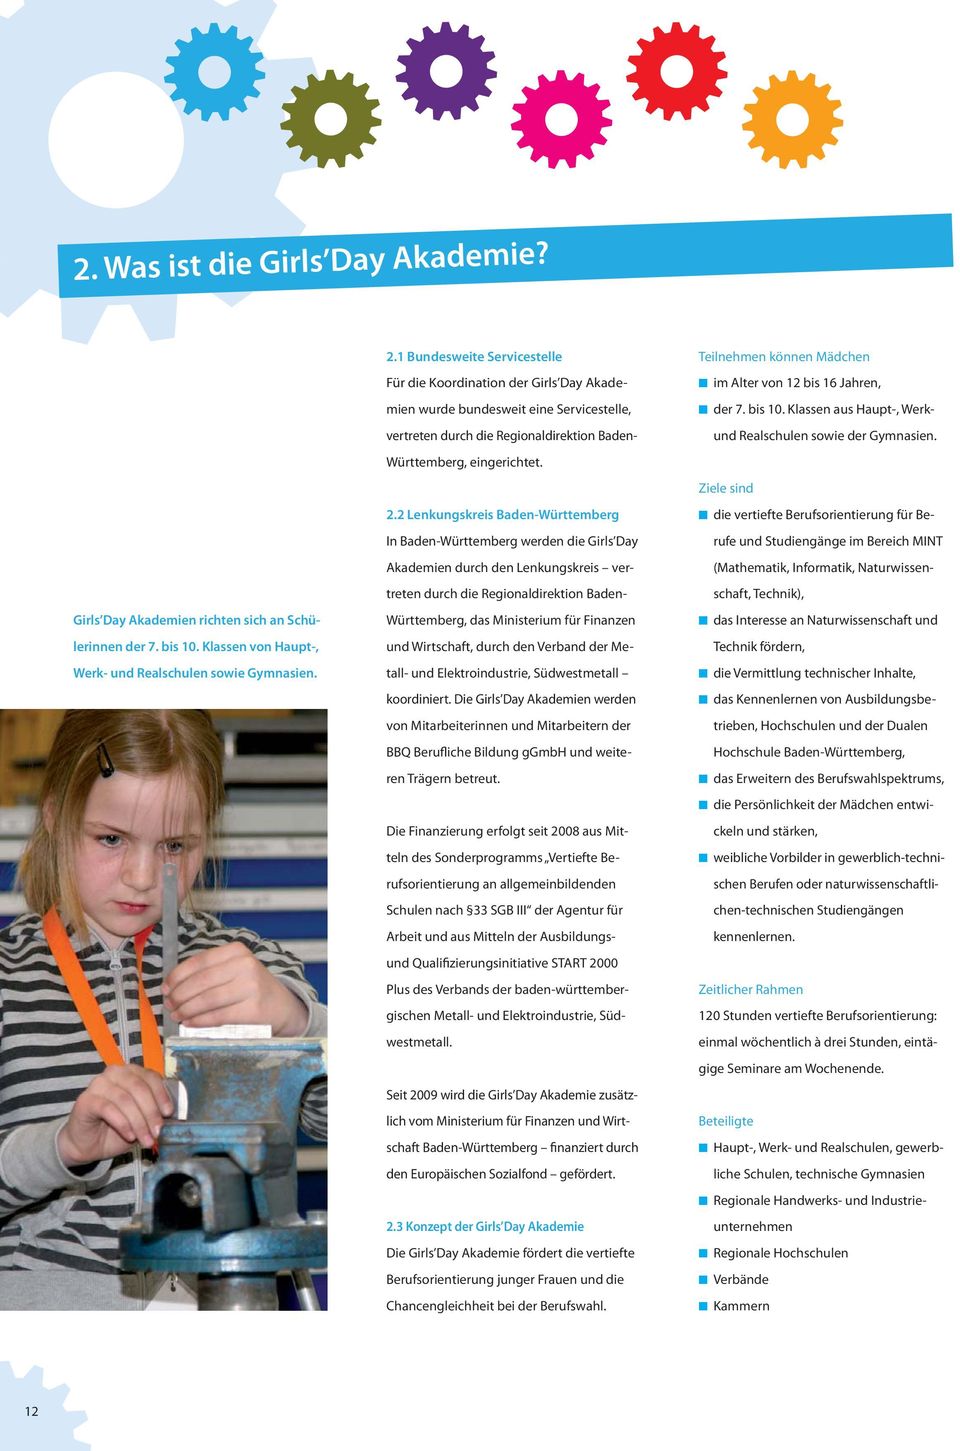 2 Lenkungskreis Baden-Württemberg In Baden-Württemberg werden die Girls Day Akademien durch den Lenkungskreis vertreten durch die Regionaldirektion Baden- Württemberg, das Ministerium für Finanzen